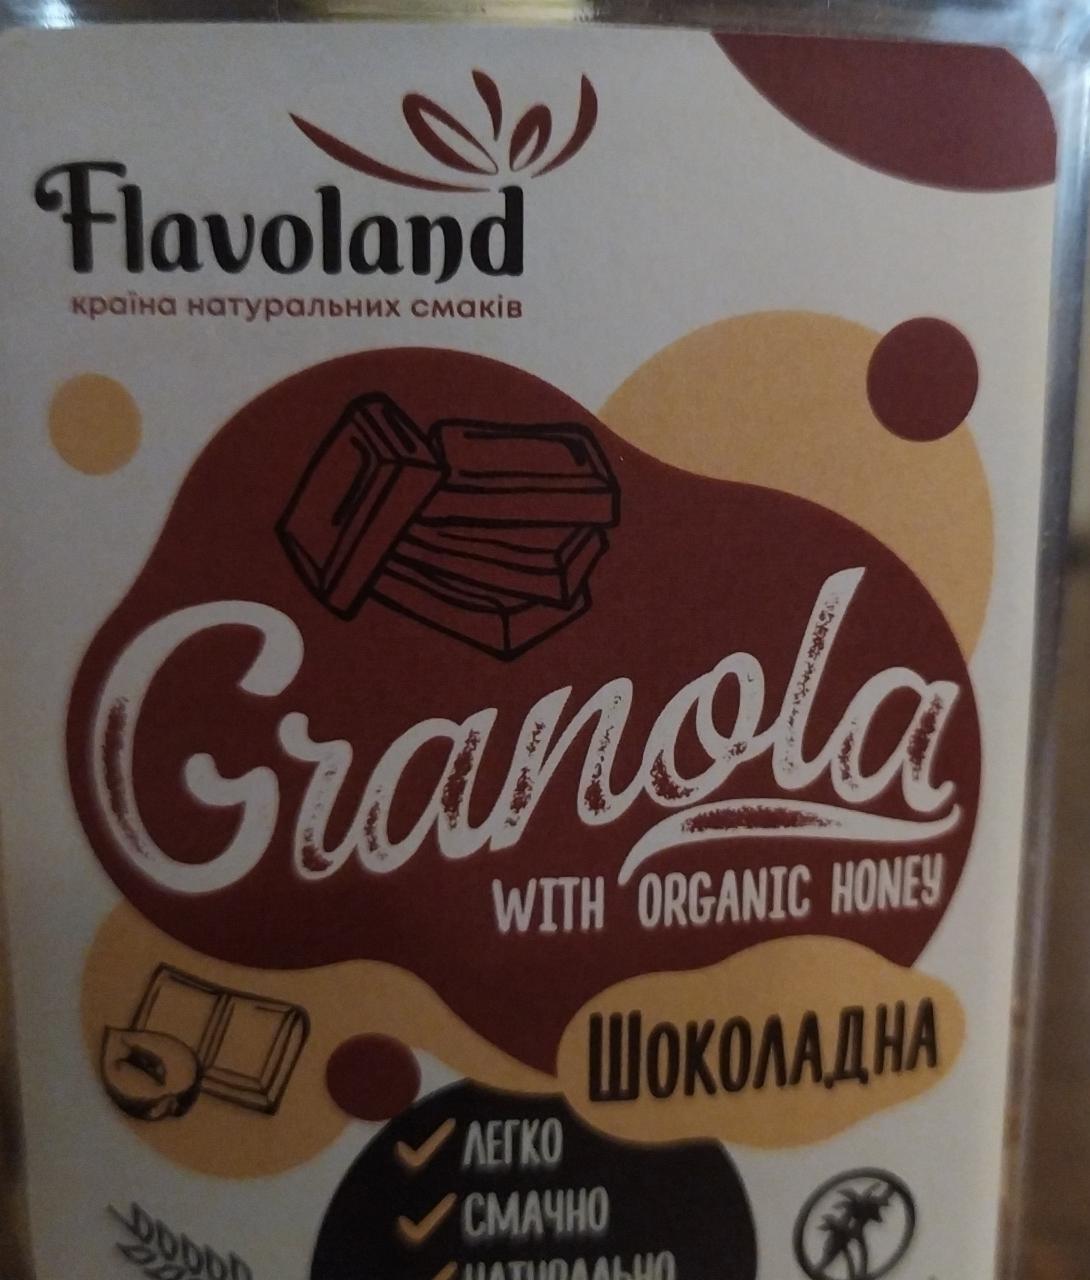 Фото - гранола с органическим медом шоколадная Flavoland